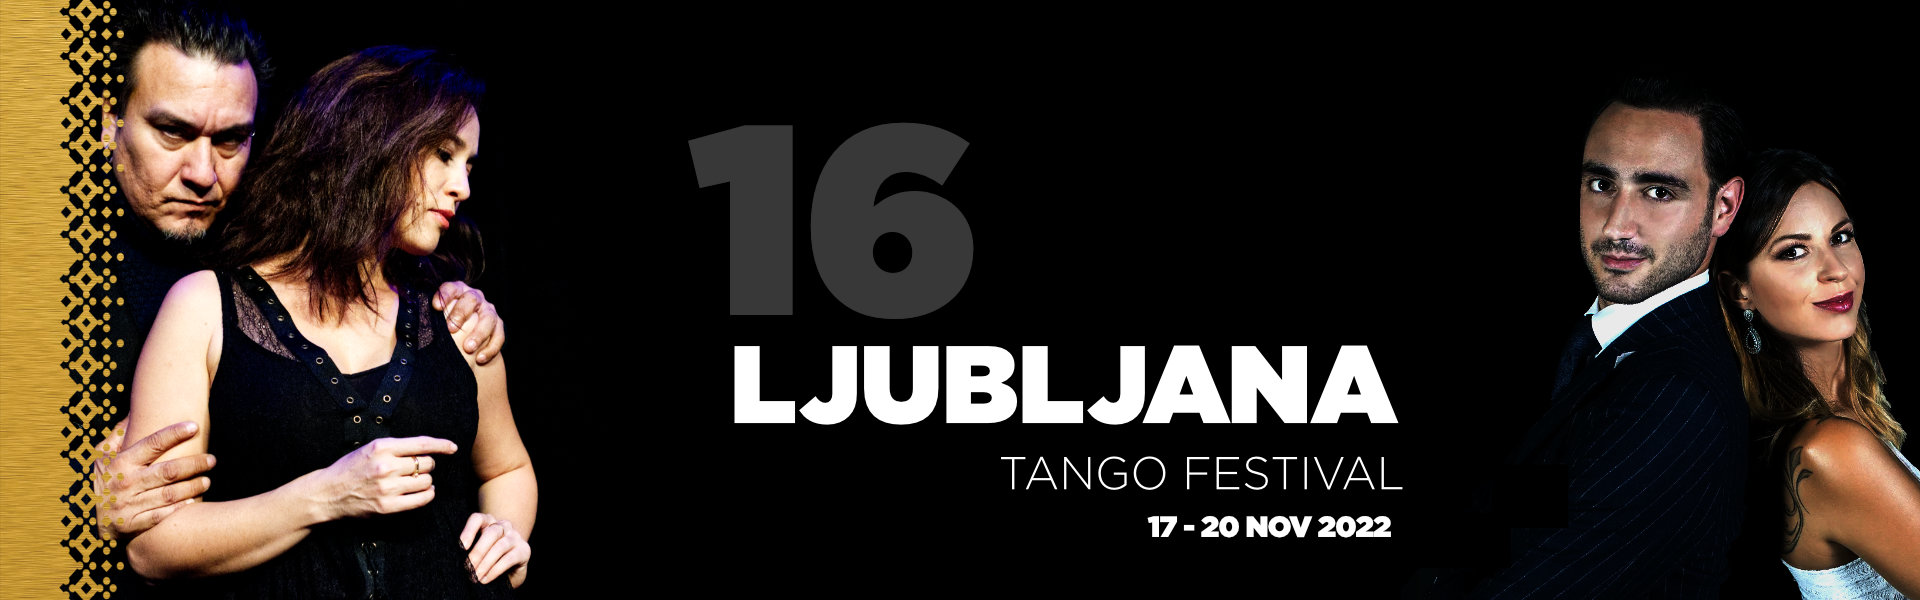 Ljubljana Tango Festival